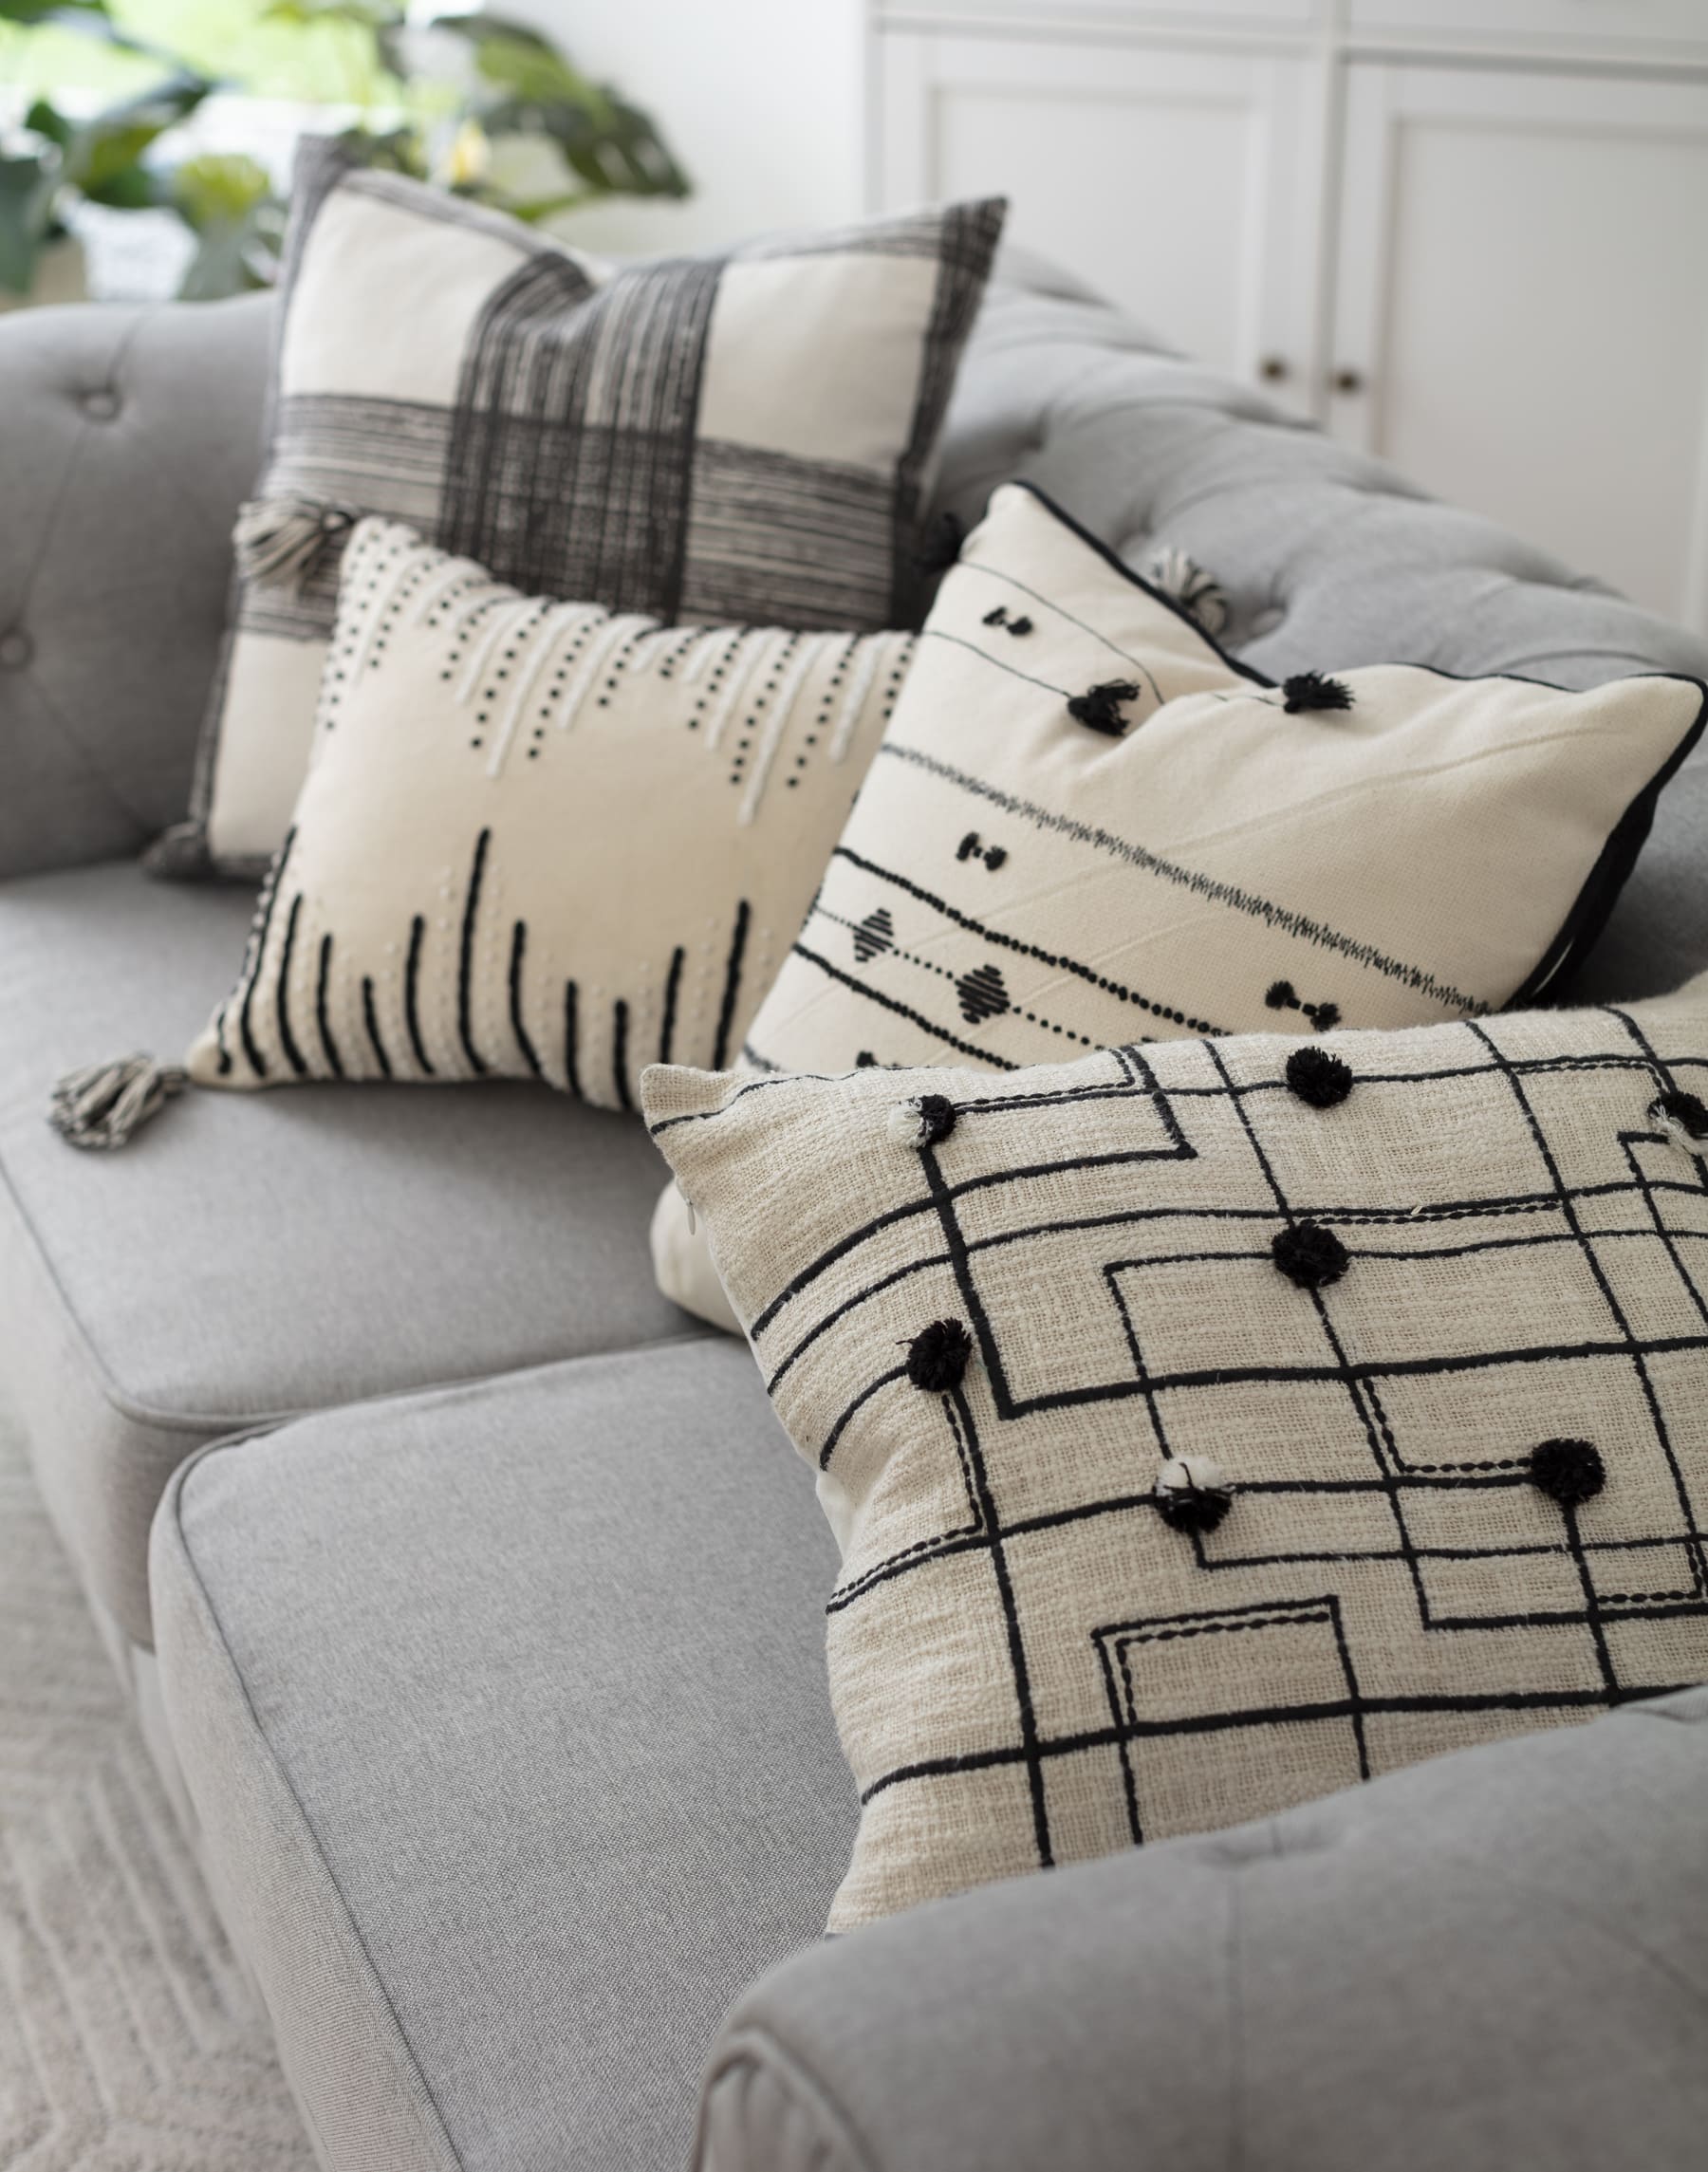 Cuatro cojines color crema con distintos patrones negros sobre un sofá gris con respaldo estilo capitoné.